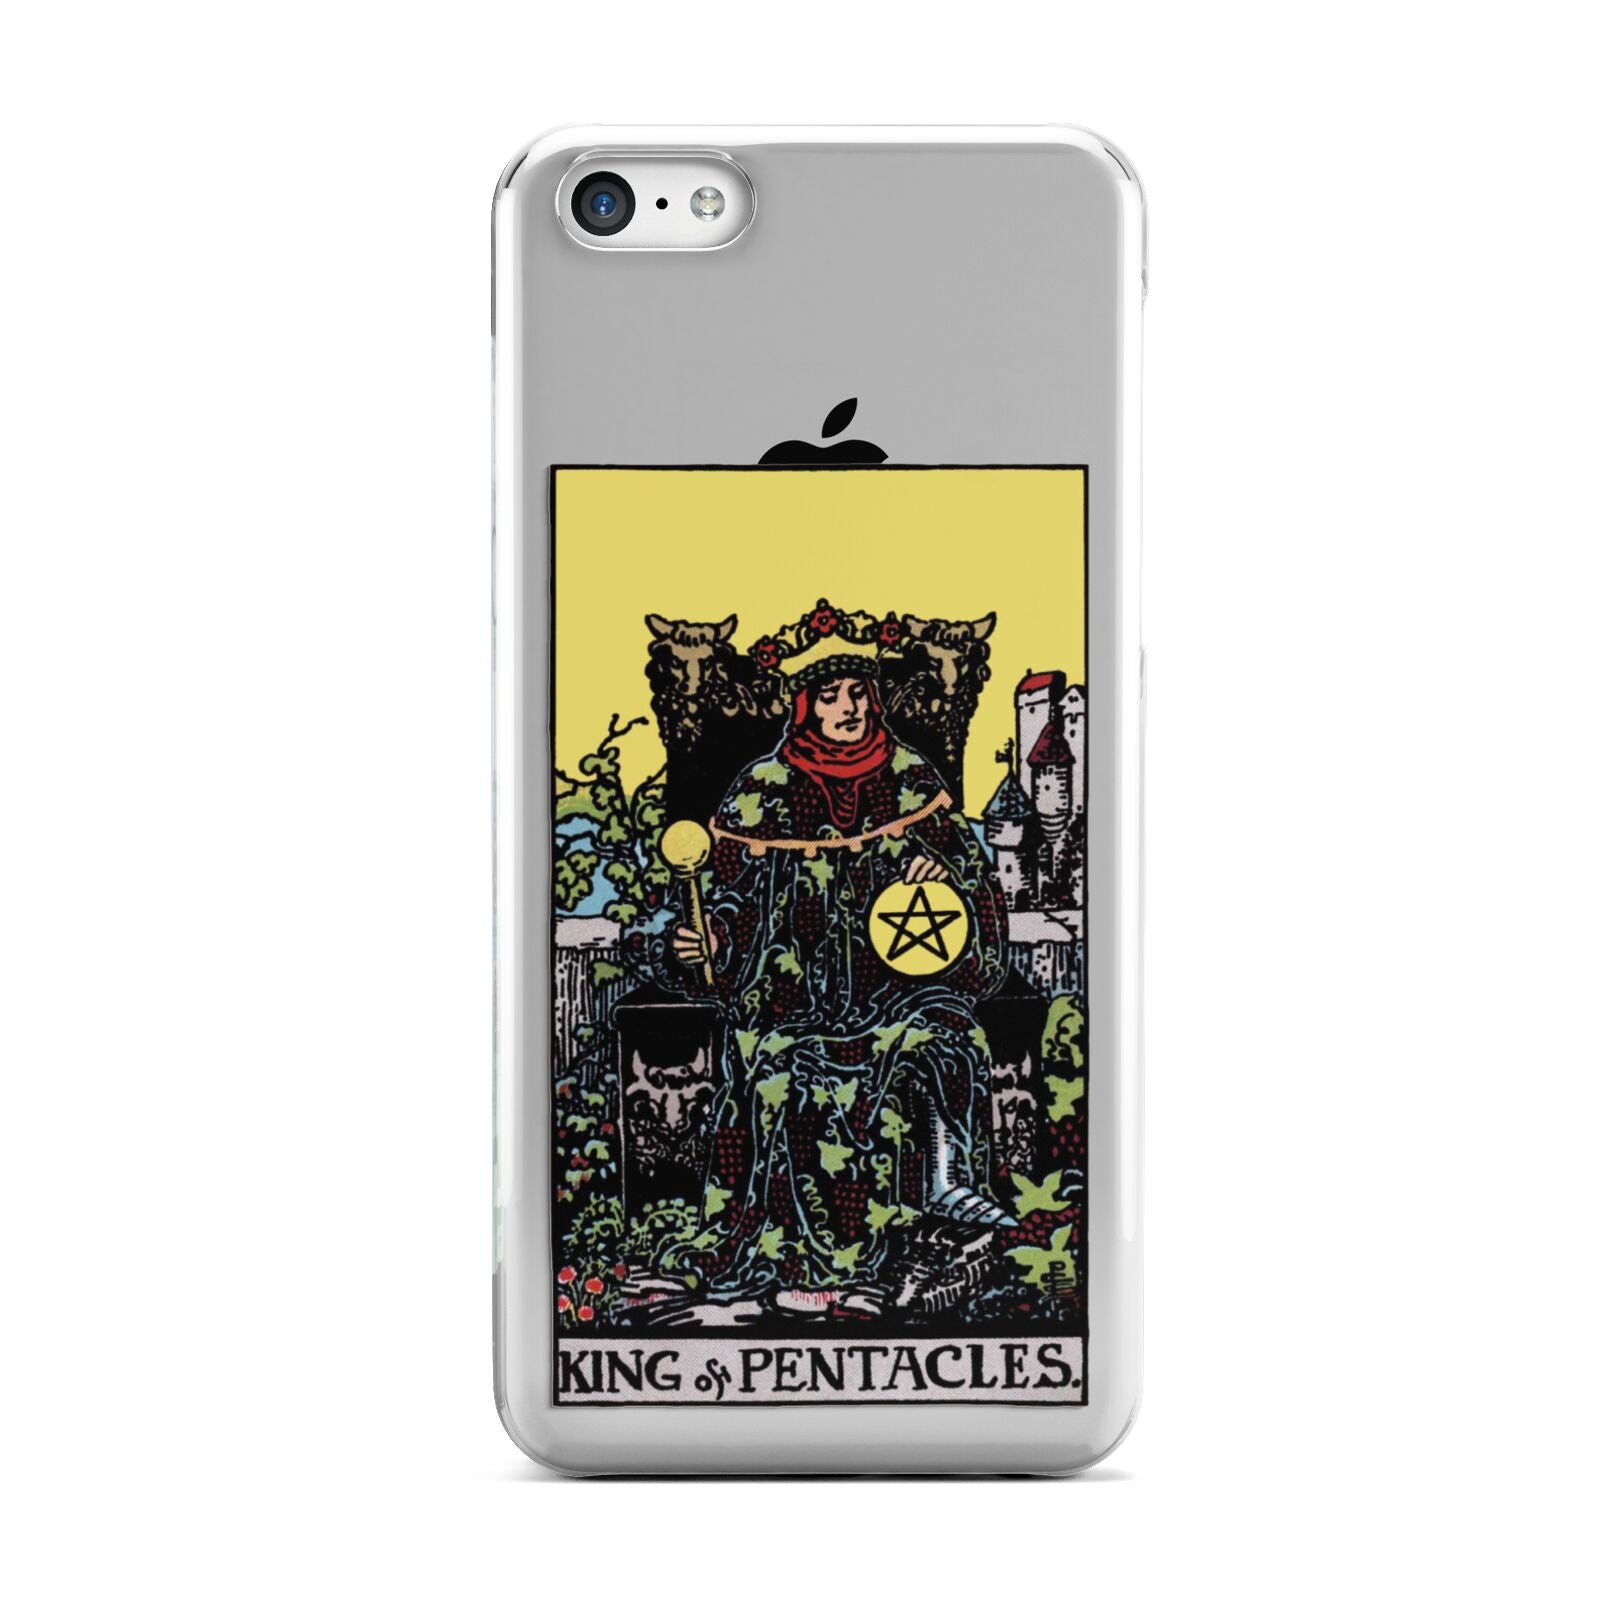 King of Pentacles Tarot Card Apple iPhone 5c Case